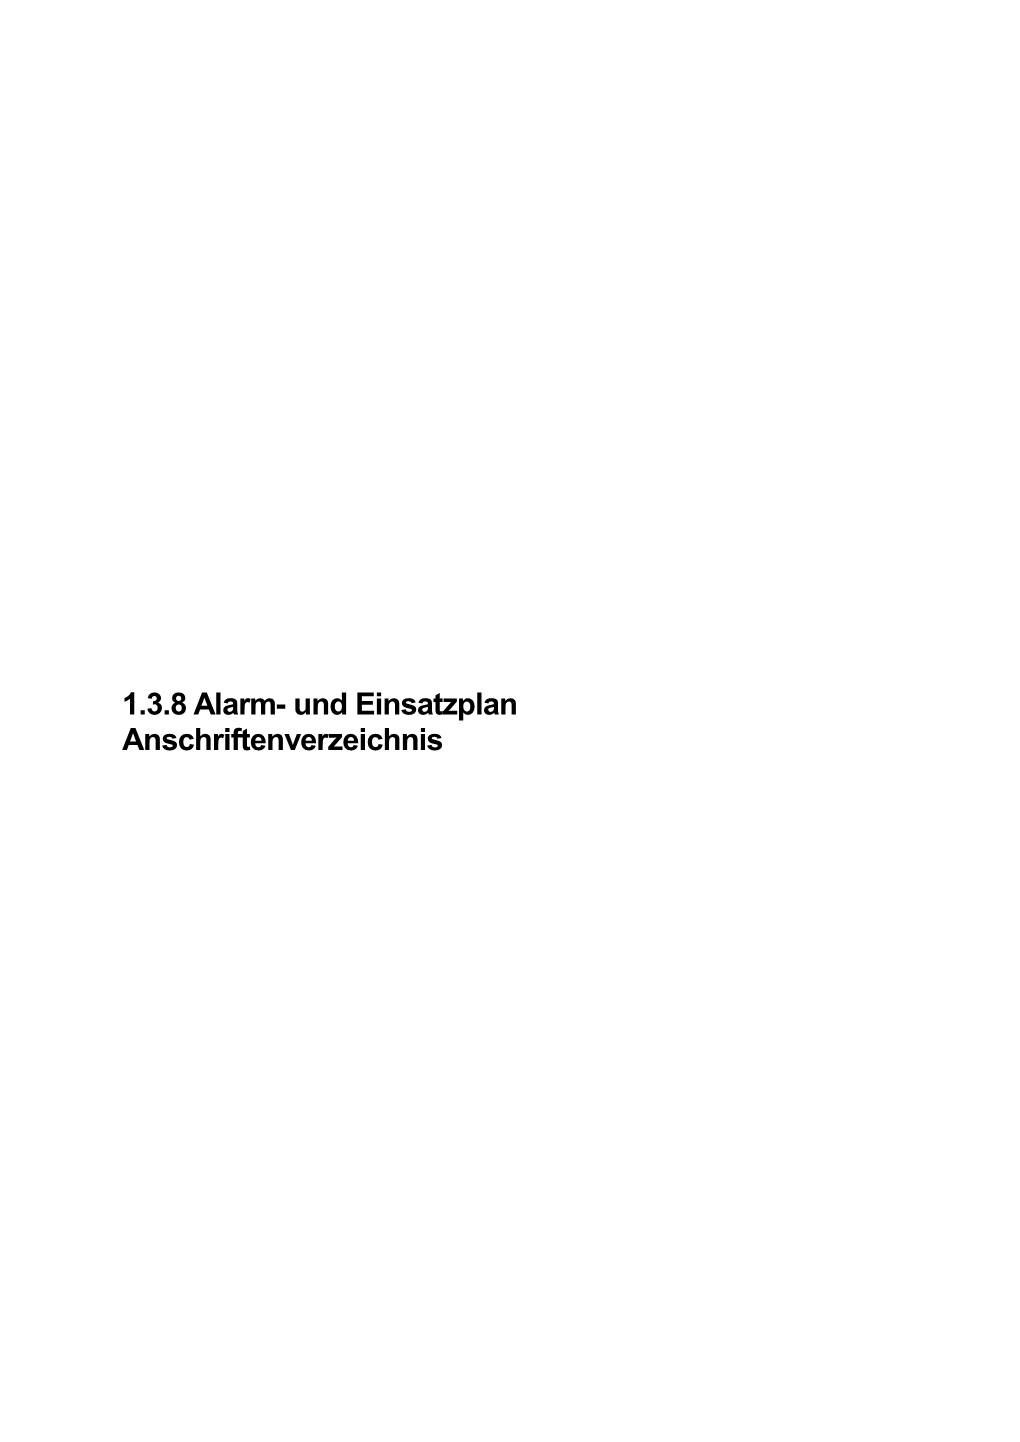 1.3.8 Alarm- Und Einsatzplan Anschriftenverzeichnis Freiwillige Verbandsgemeinde Lambsheim - Heßheim Feuerwehr